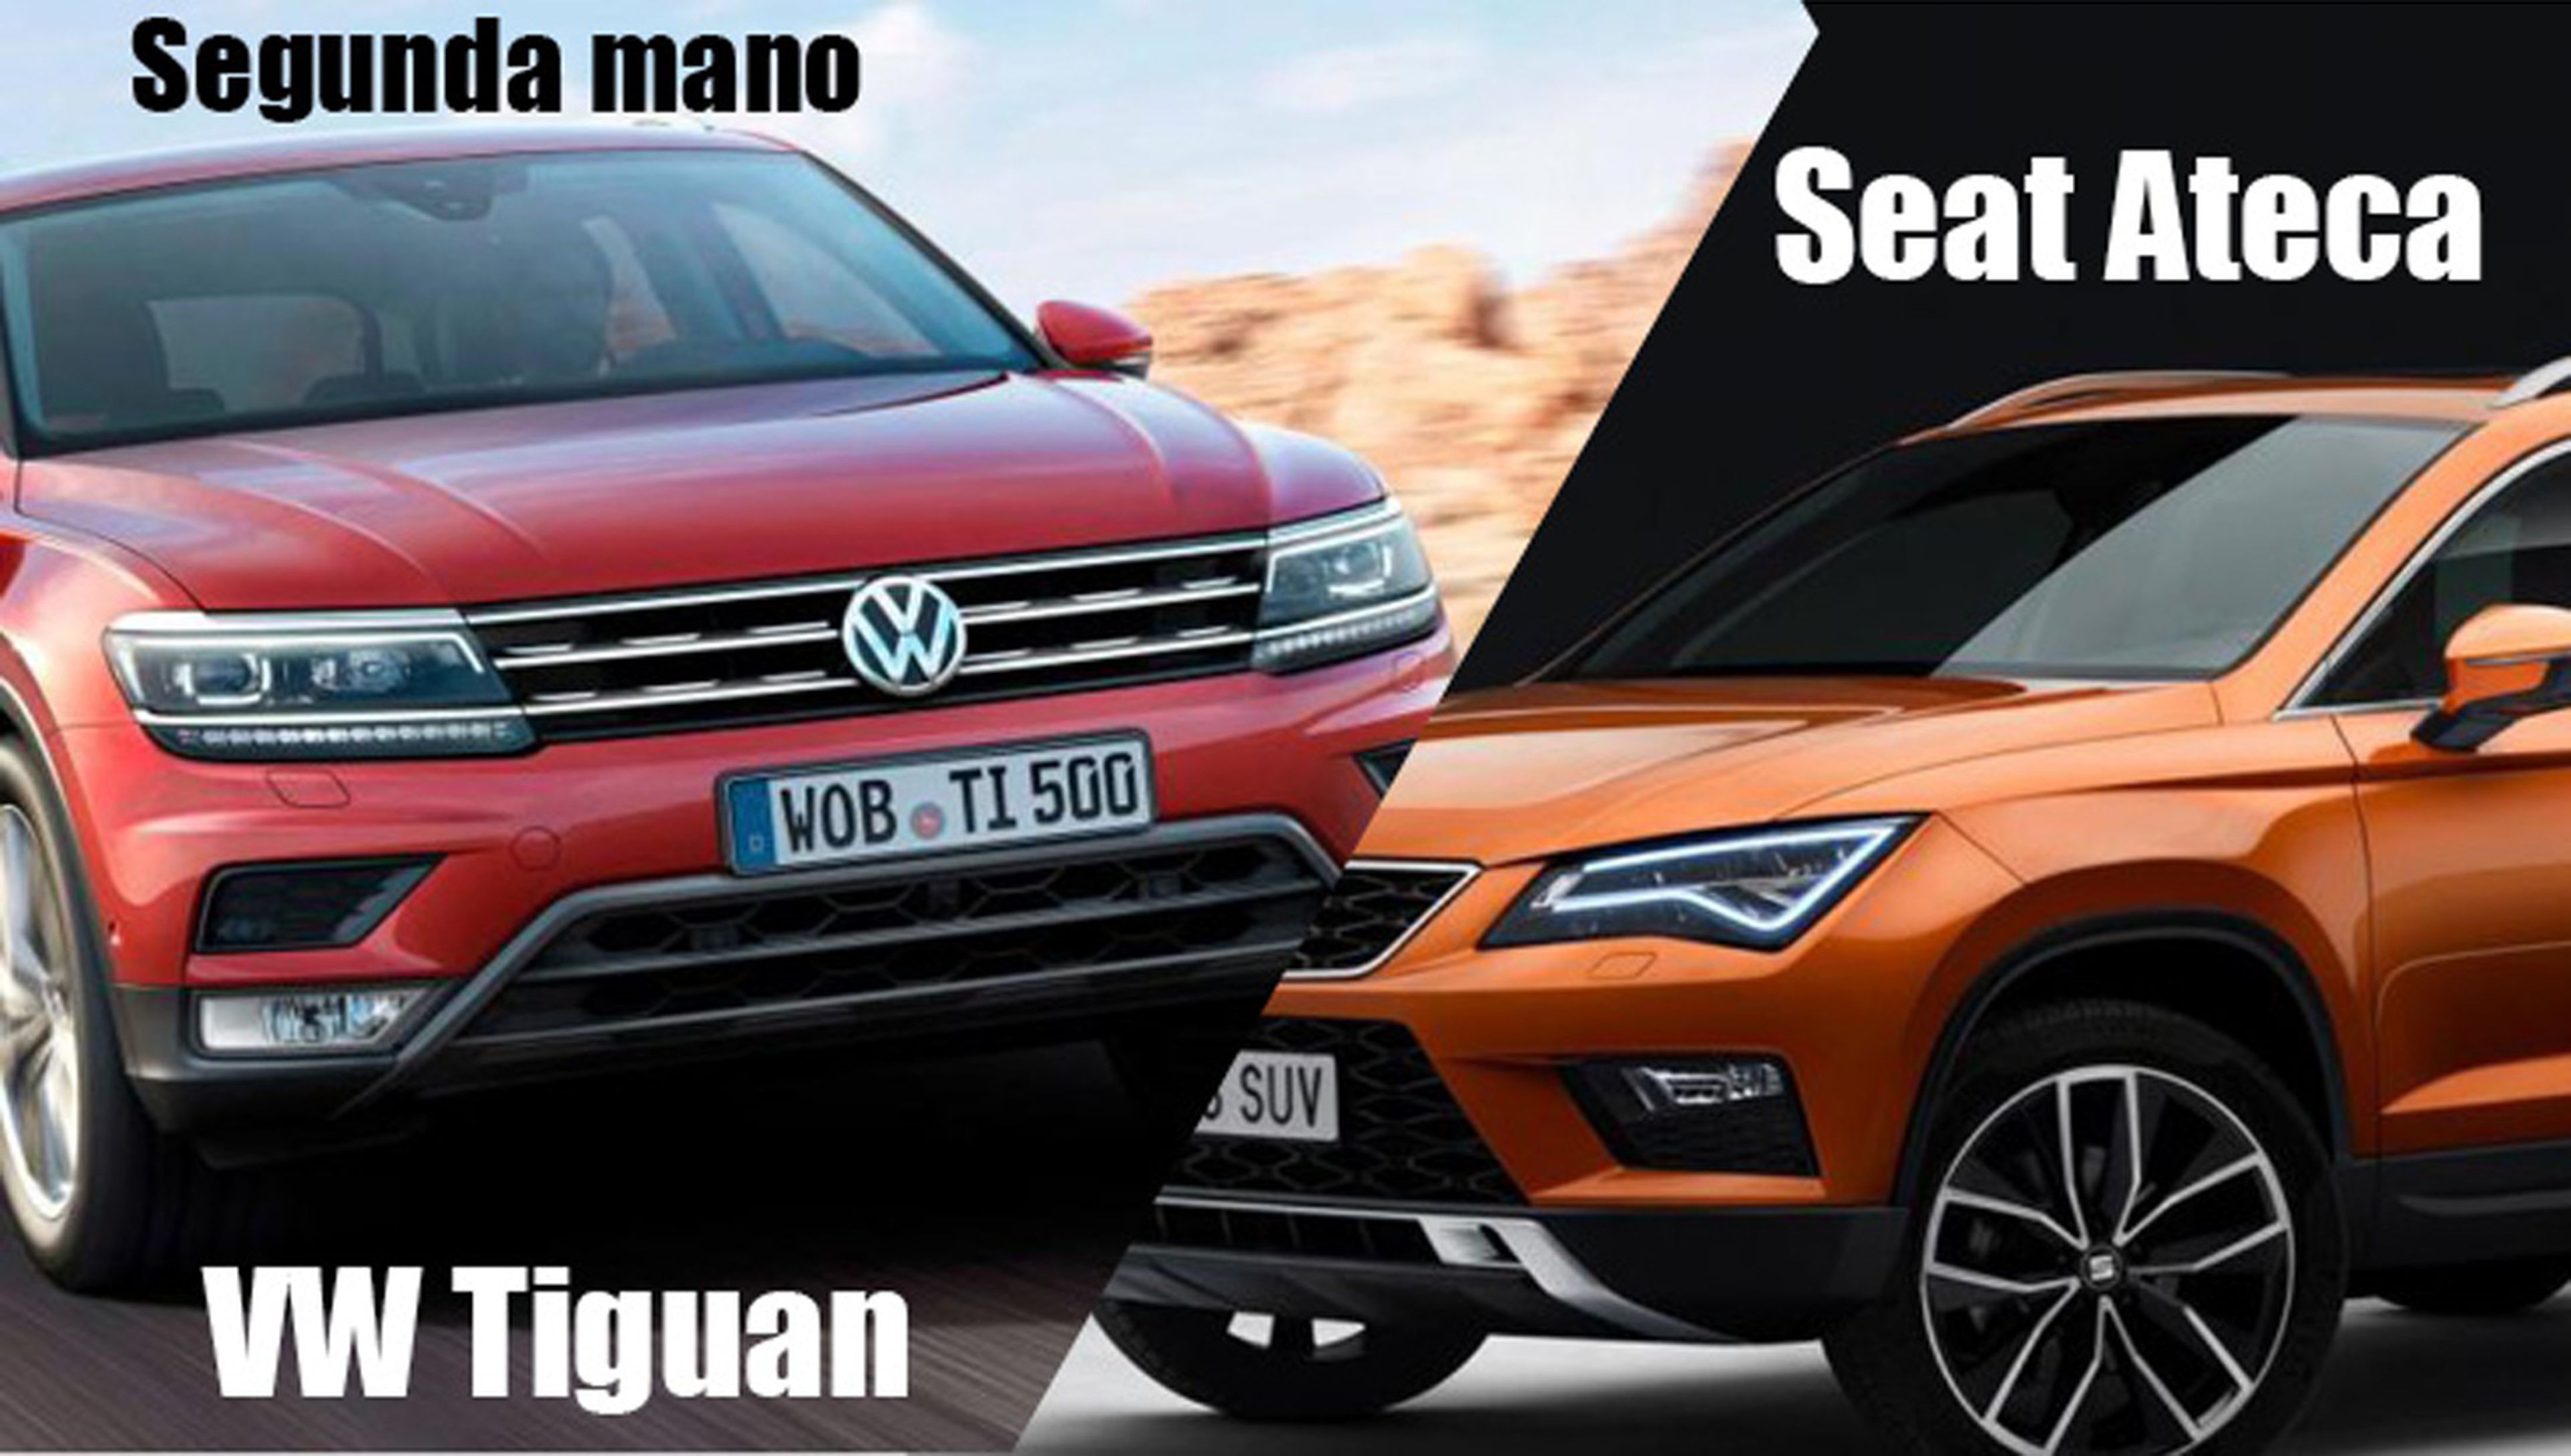 Segunda mano: Seat Ateca o Volkswagen Tiguan, ¿cuál es mejor opción?